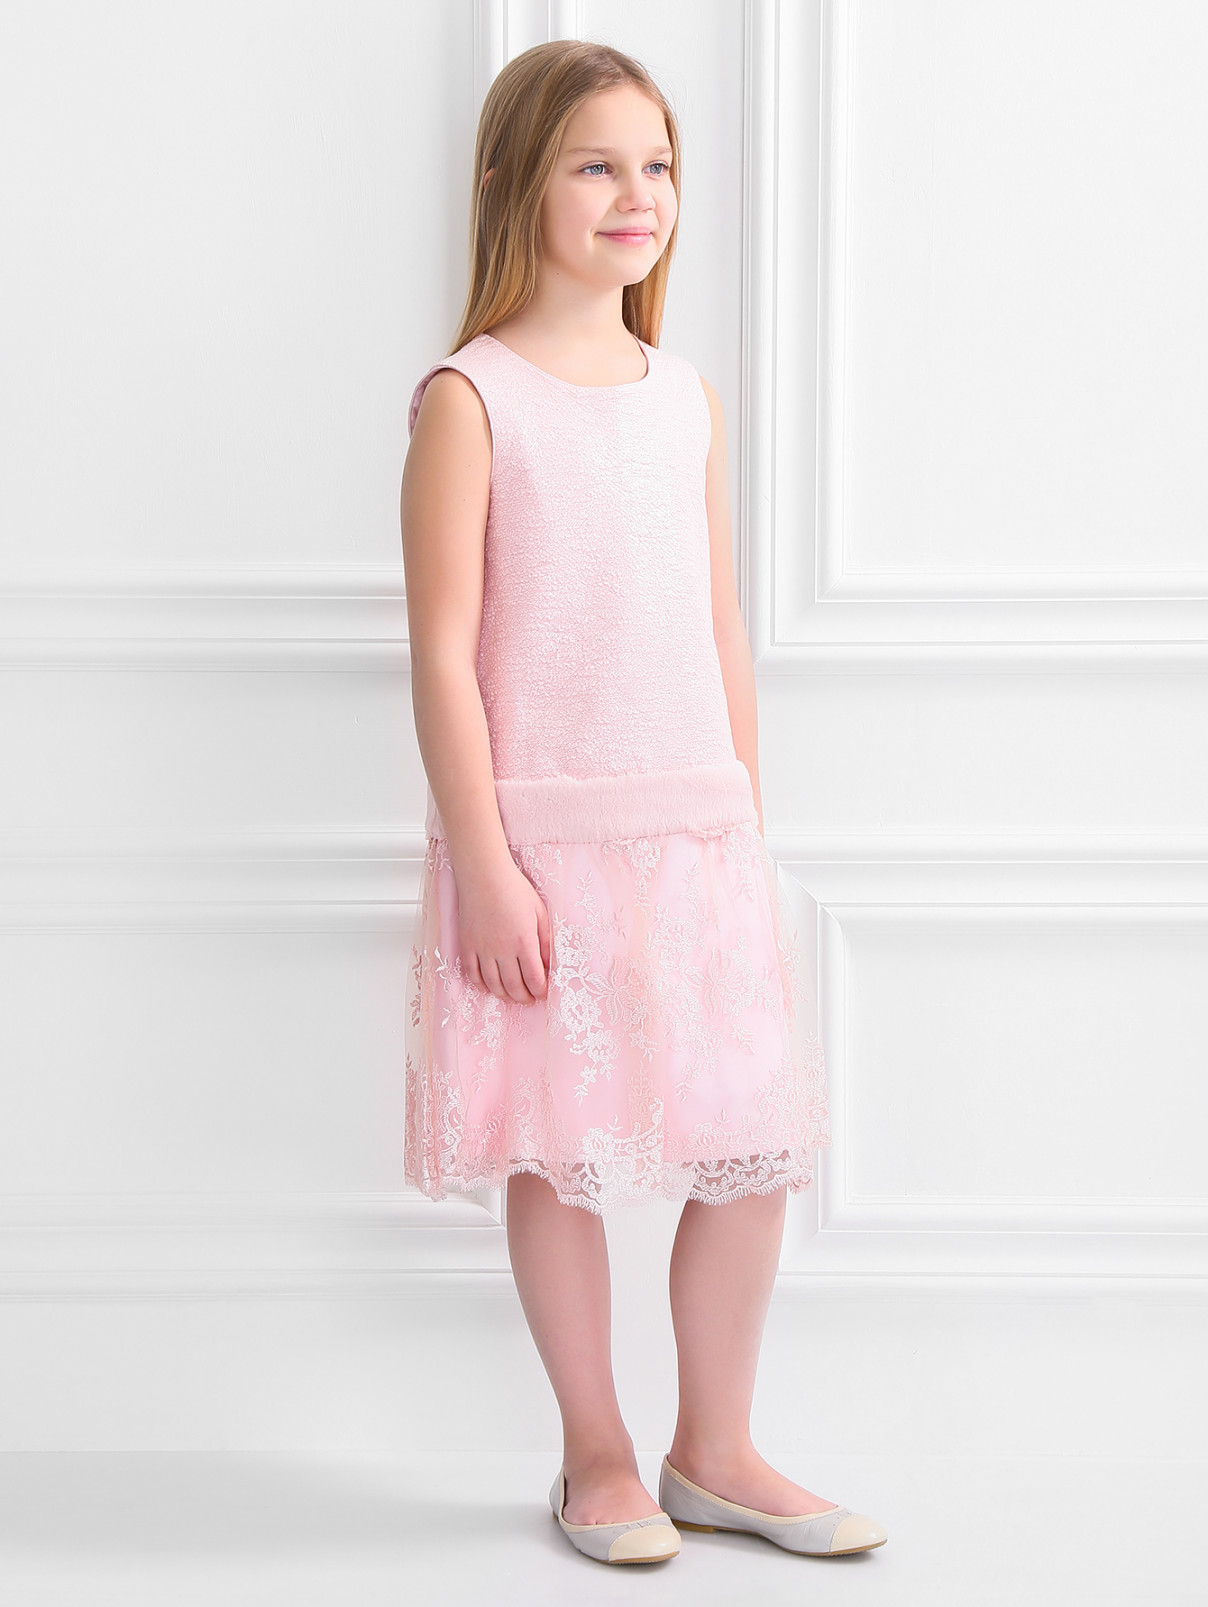 Платье с кружевной юбкой и отделкой мехом Val Max  –  Модель Общий вид  – Цвет:  Розовый